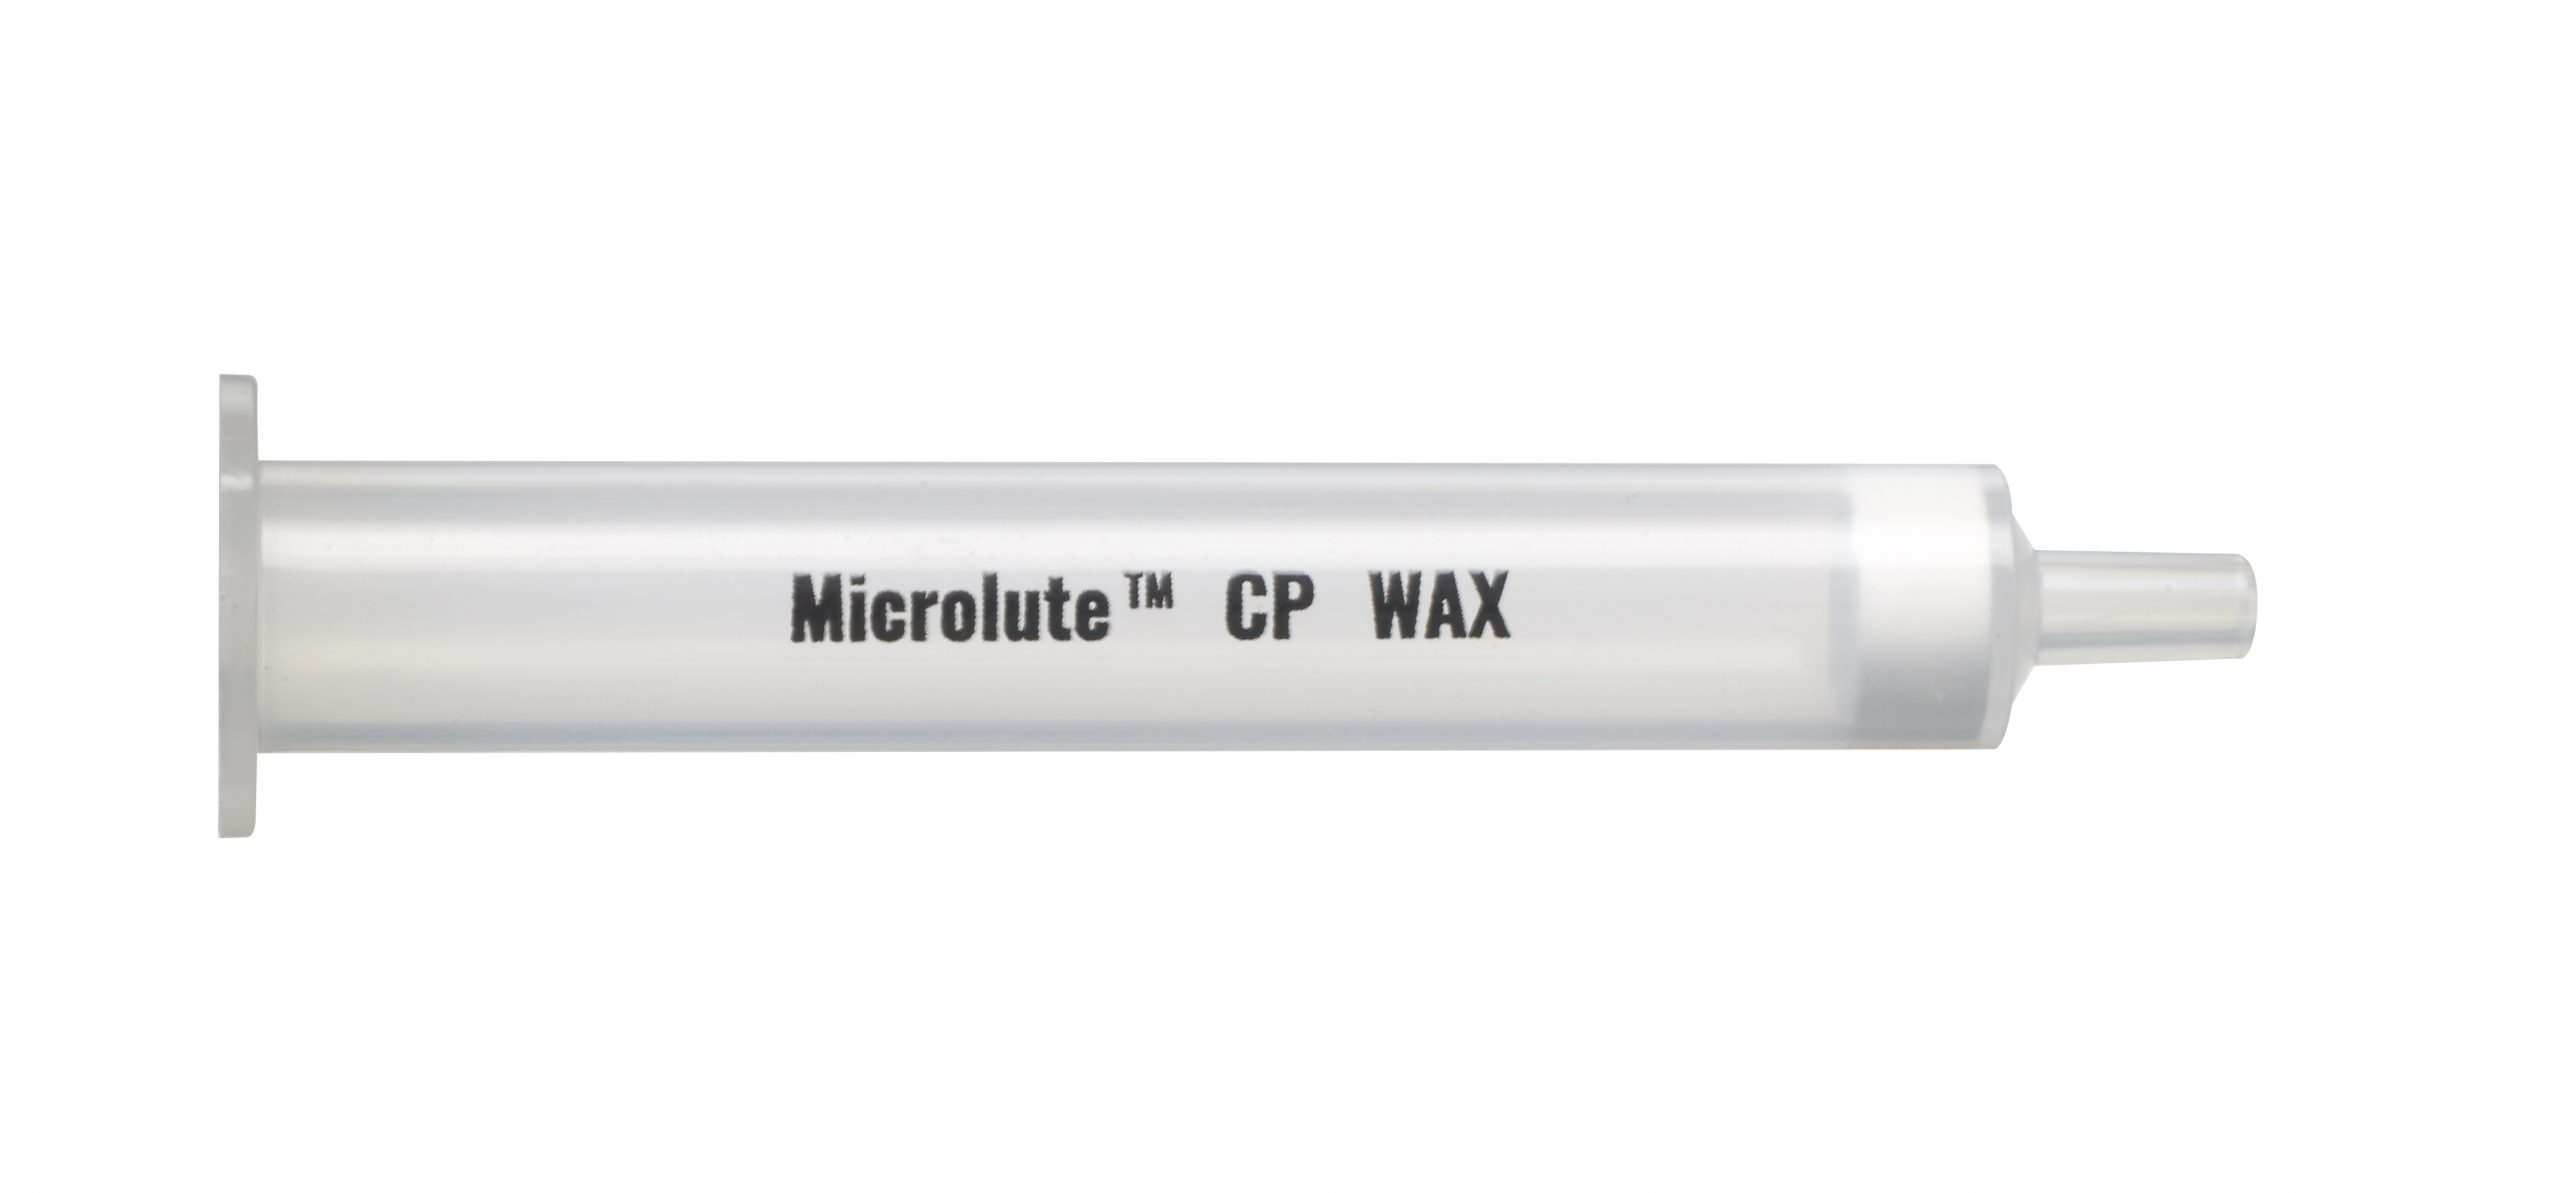 Microlute CP WAX